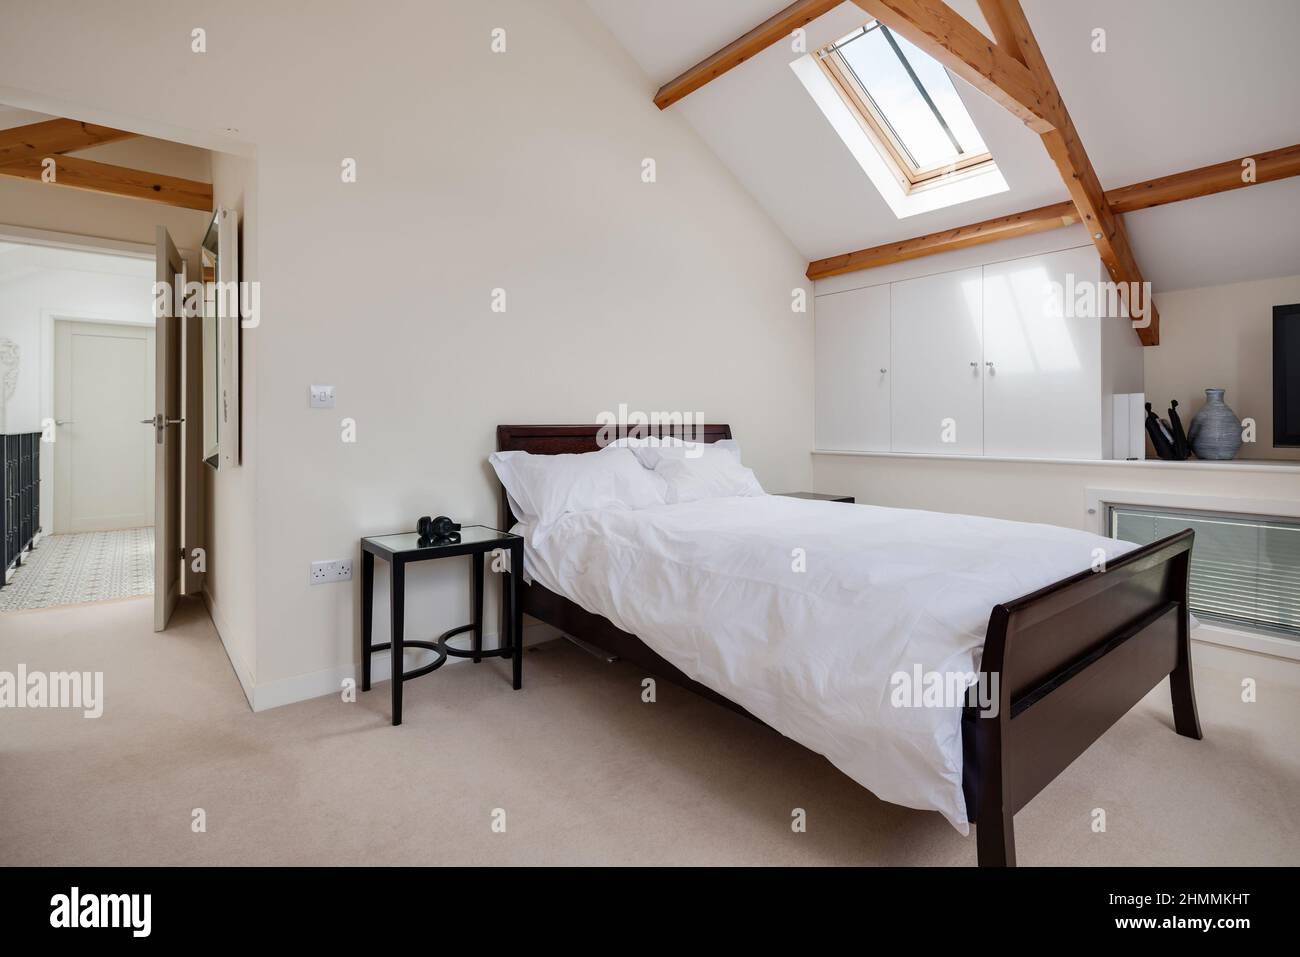 Newport, Essex - juillet 10 2018: Chambre à coucher avec lit, table et plafond voûté avec poutres apparentes. Banque D'Images